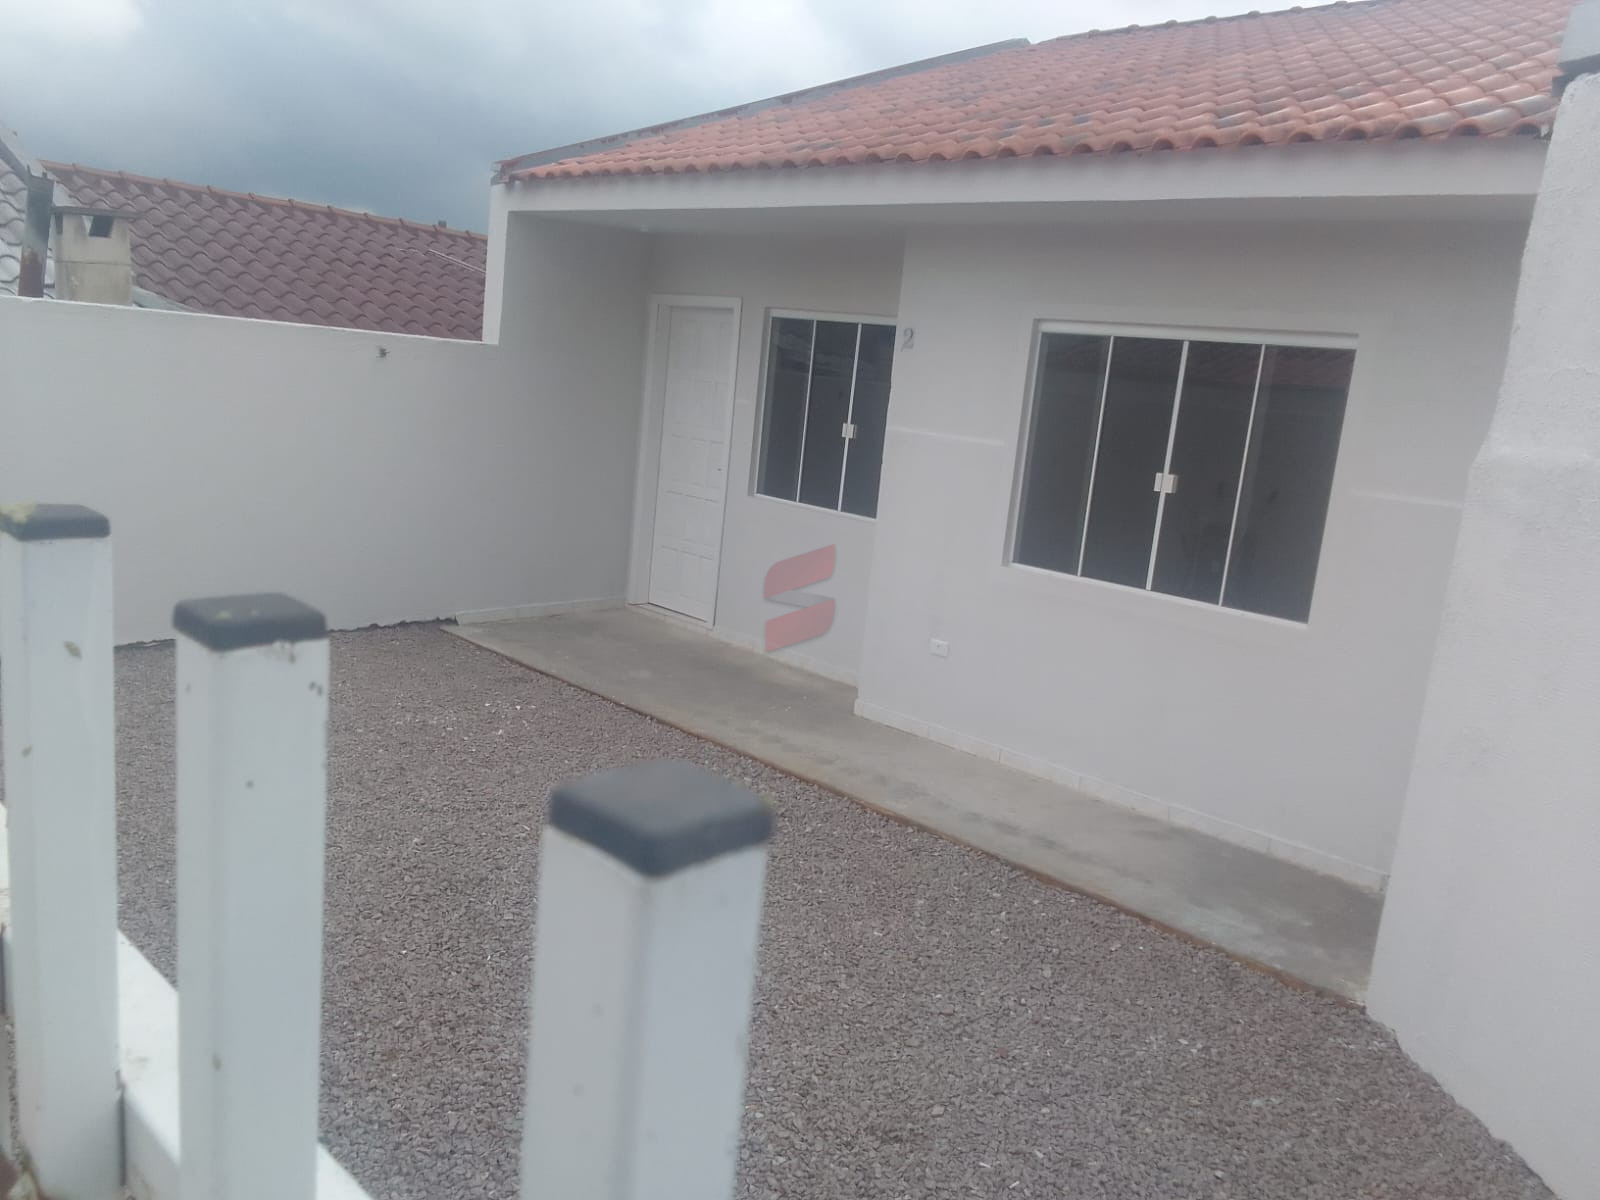 CASA com 2 dormitórios à venda com 90m² por R$ 195.000,00 no bairro Planta Deodoro - PIRAQUARA / PR